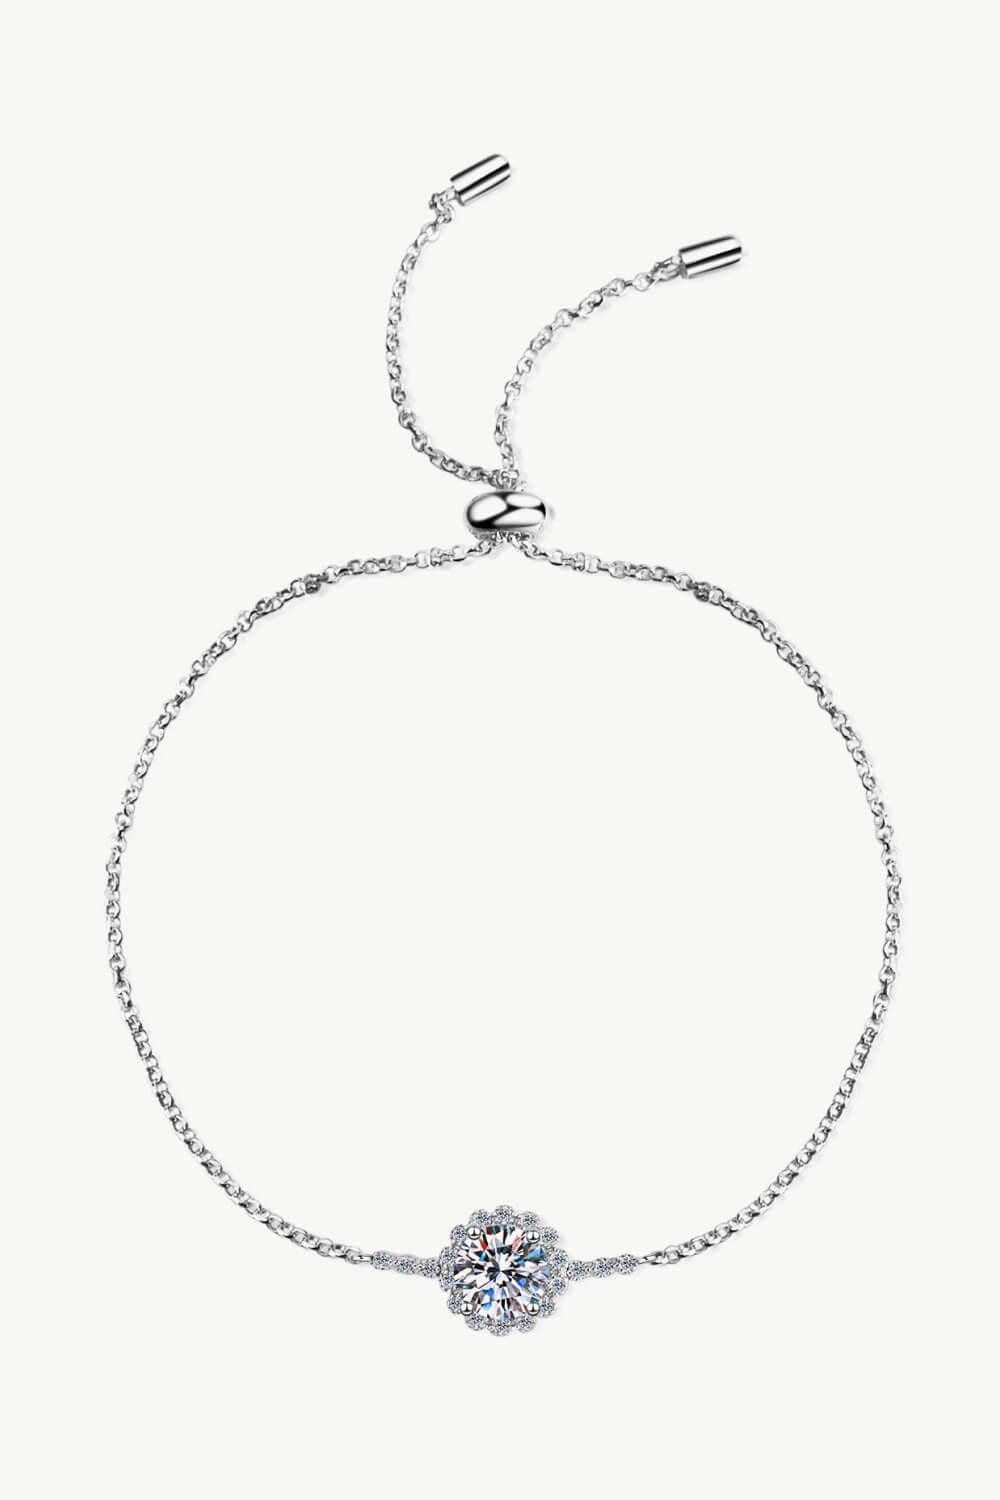 1 Carat Moissanite Chain Bracelet - Trendha